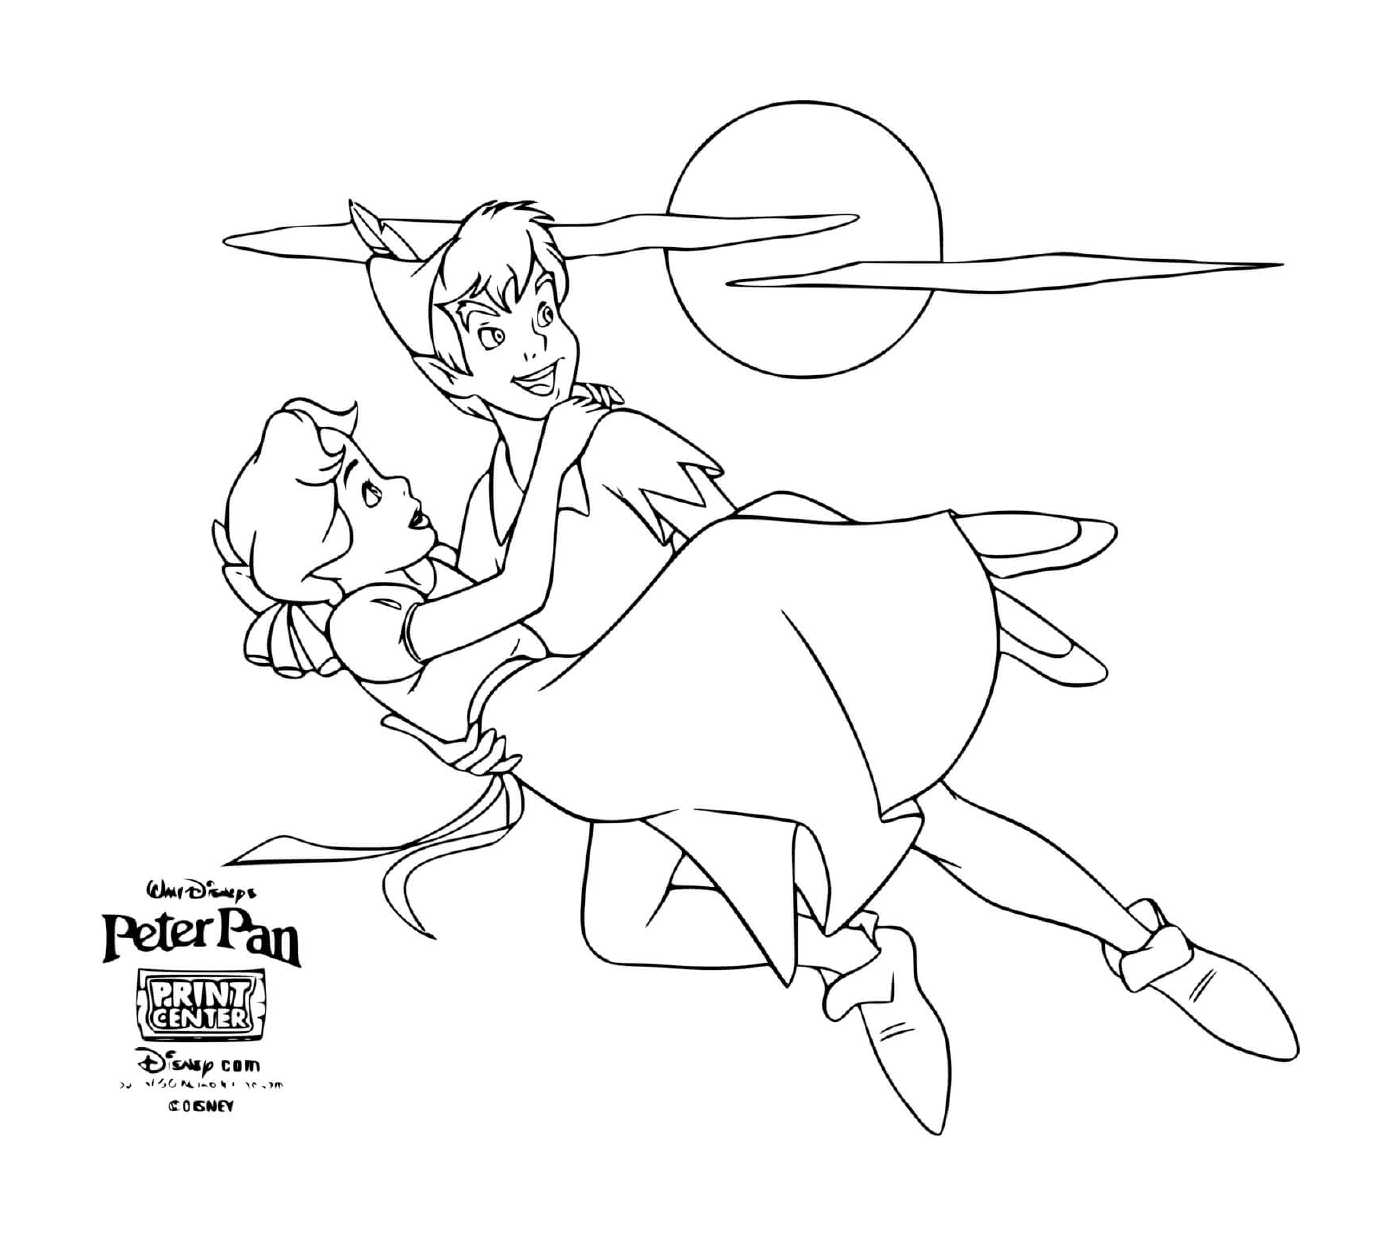   Peter Pan sauve princesse Wendy 